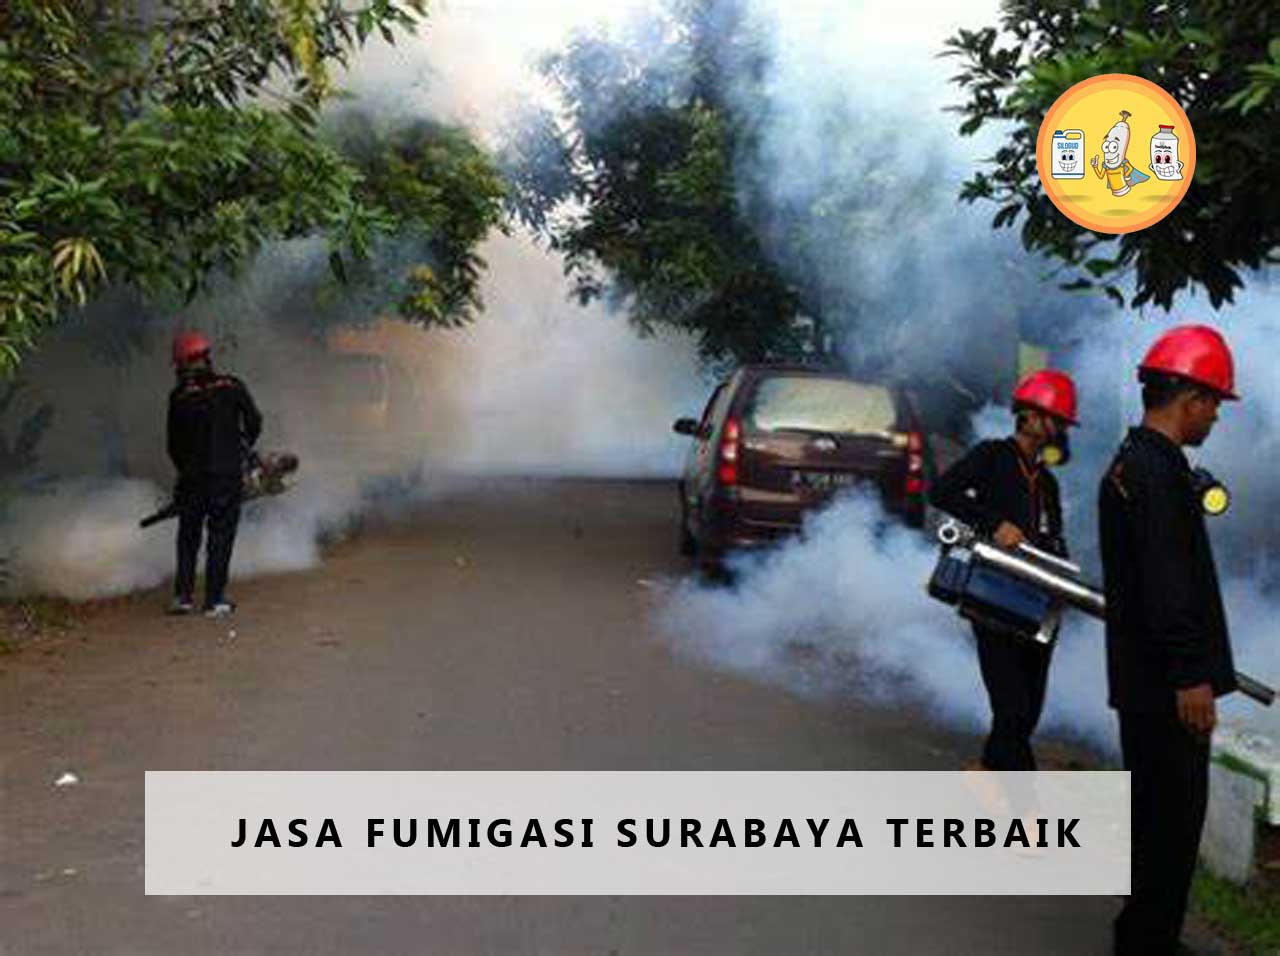 Jasa Fumigasi Surabaya Terbaik